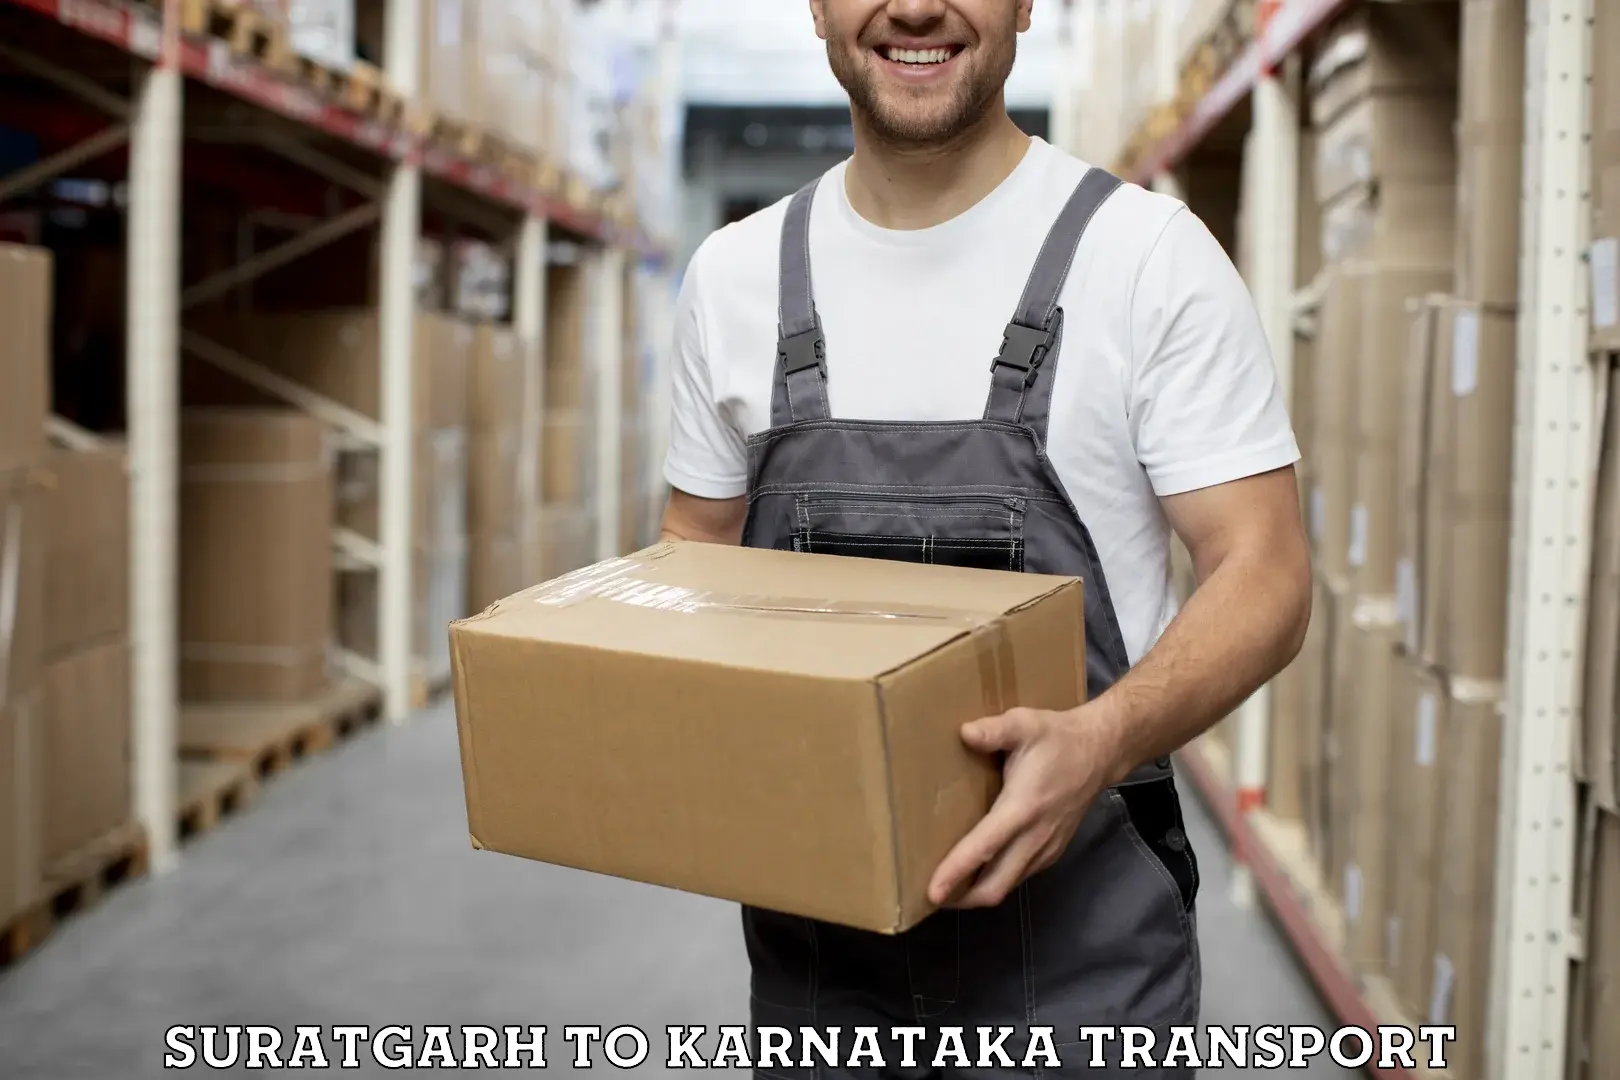 Transport in sharing Suratgarh to Karnataka